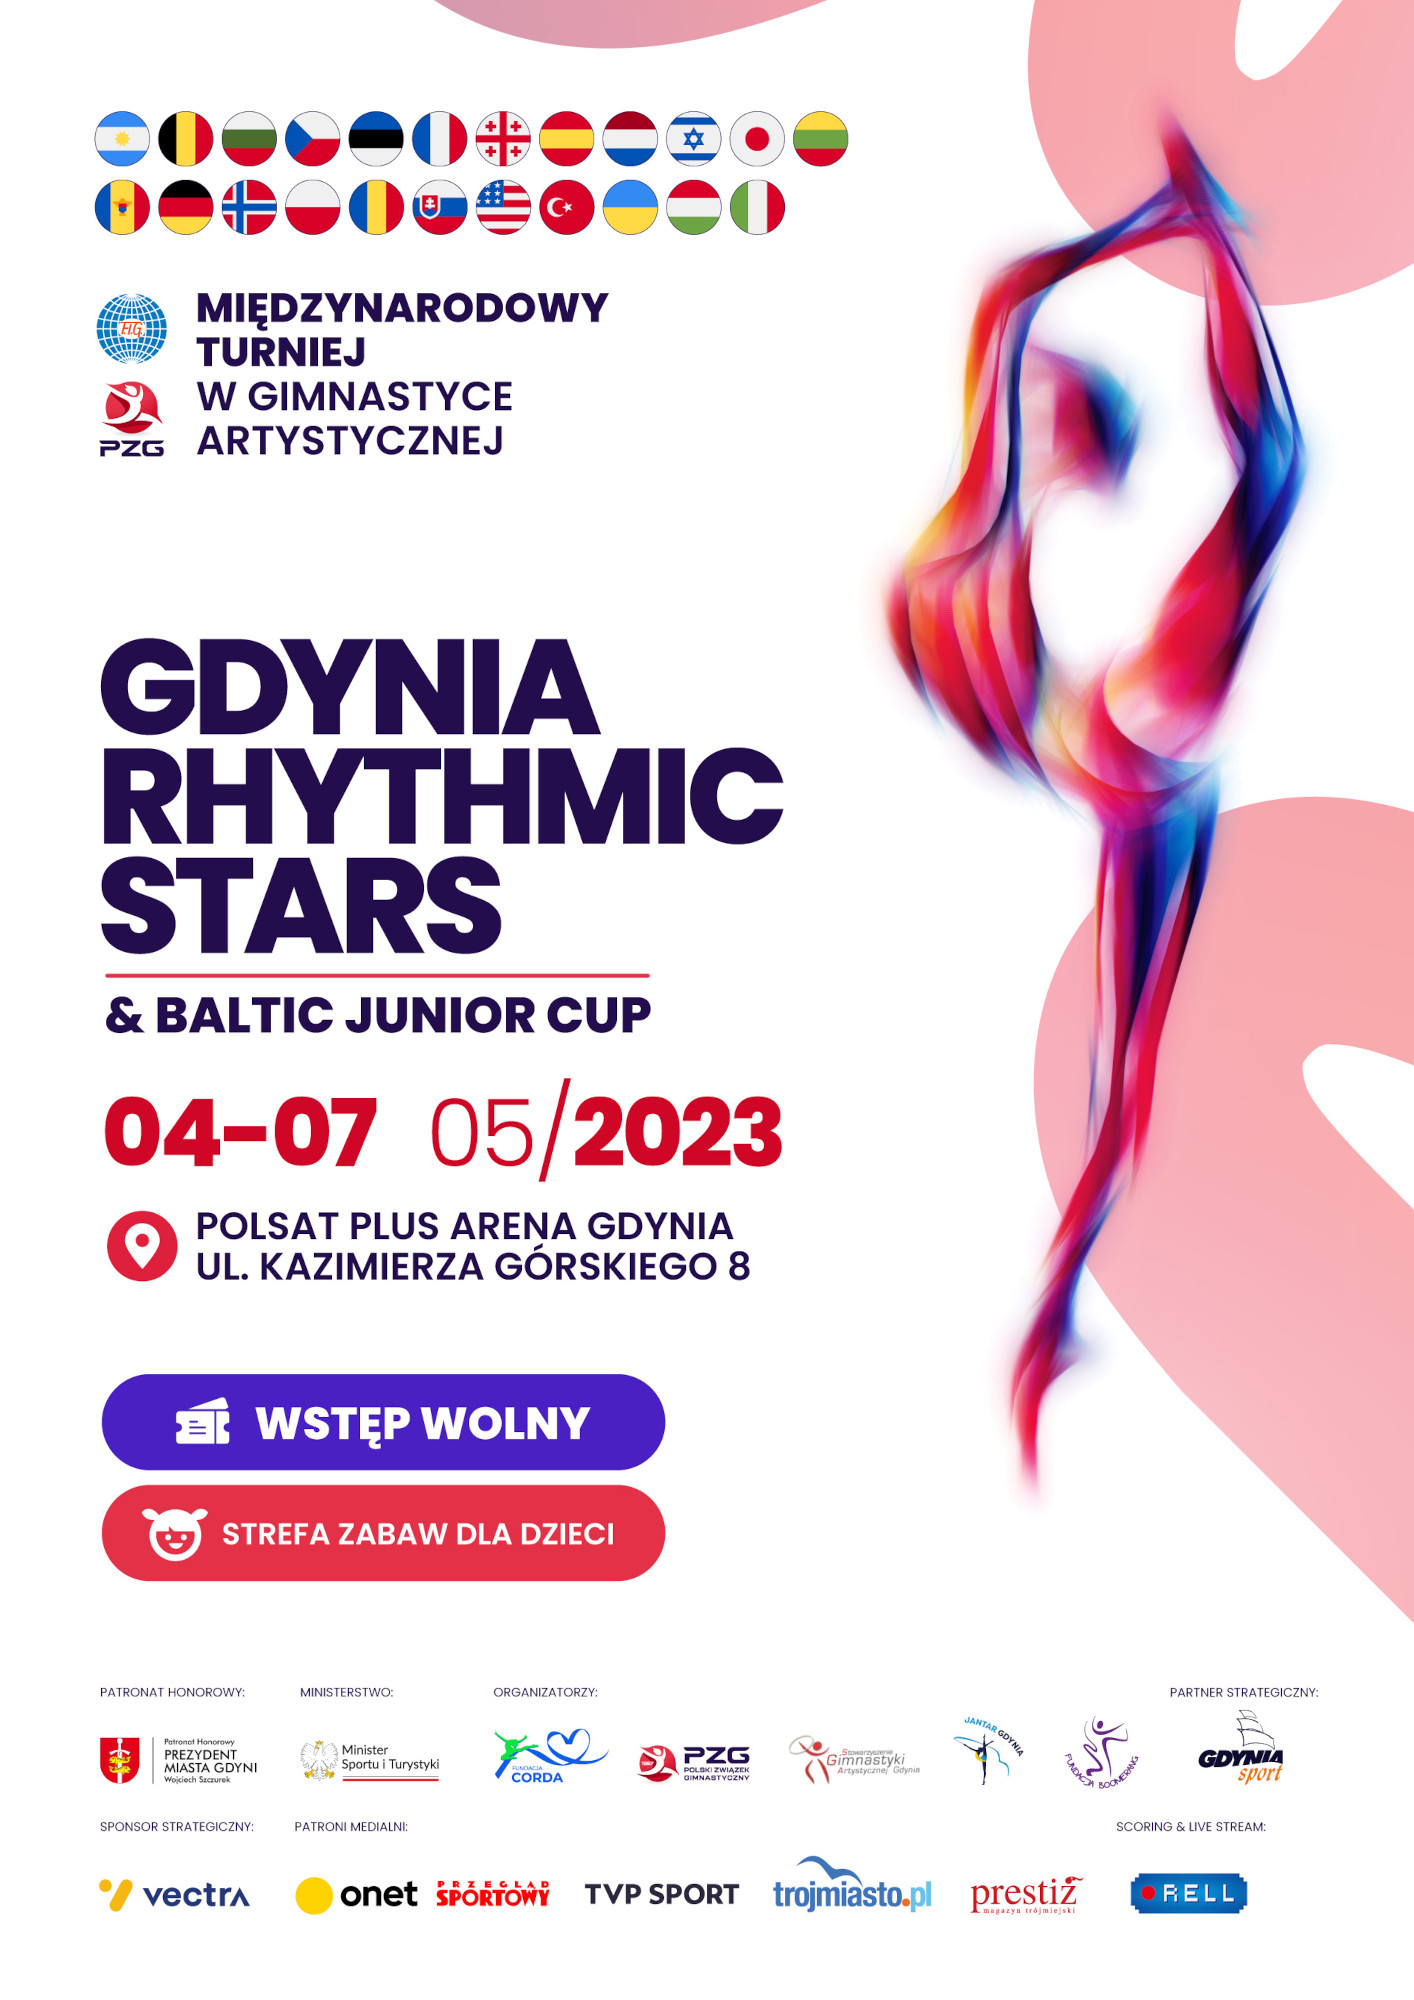 Gdynia Rhythmic Stars 2023 poster